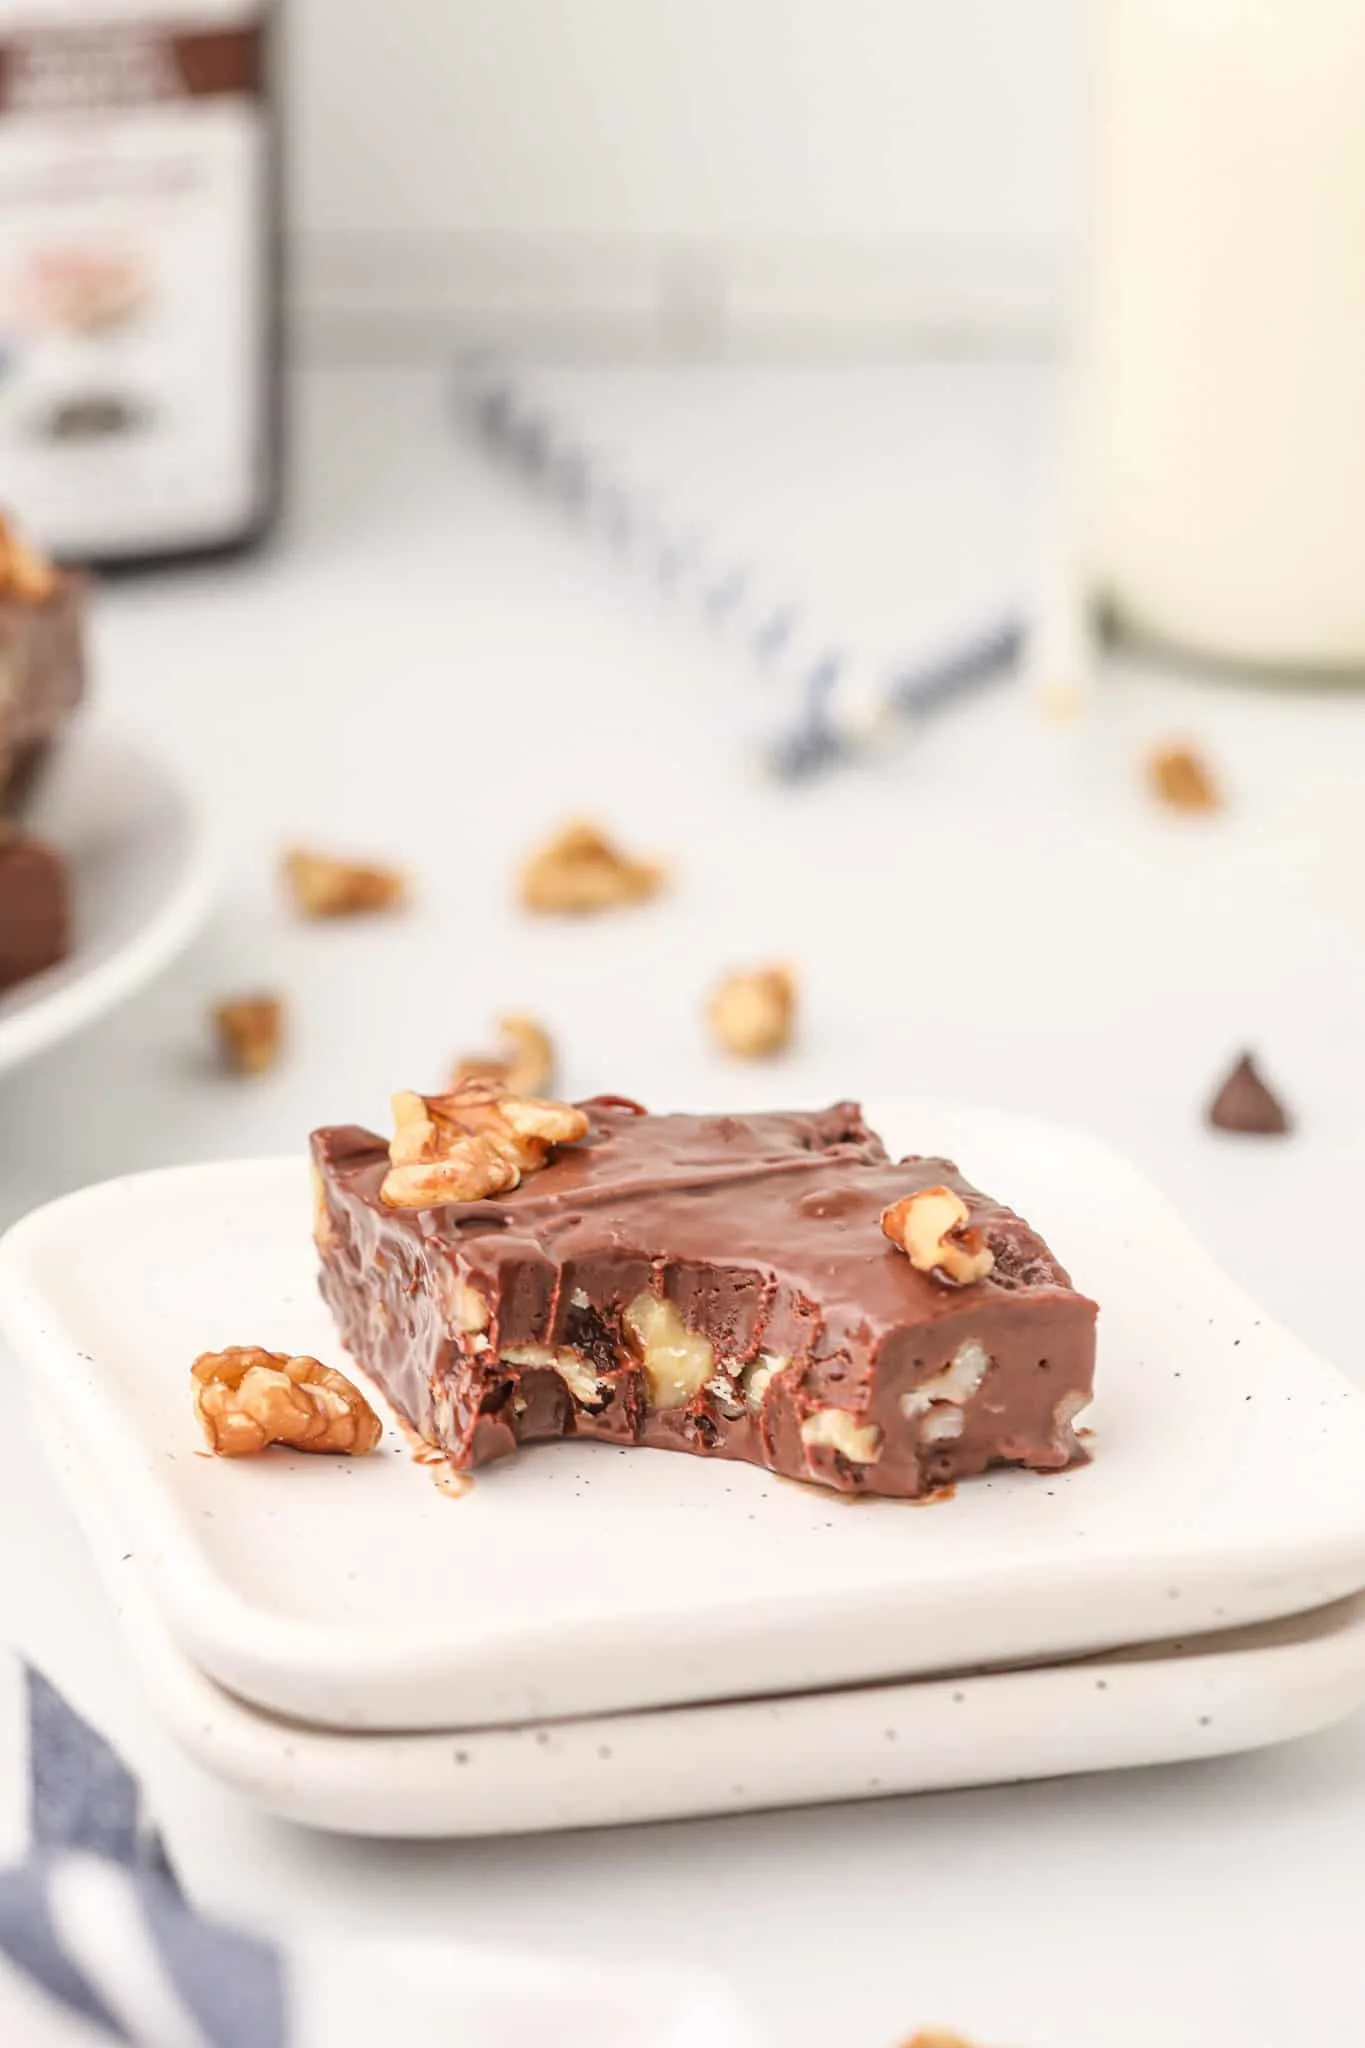 4 Ingredient Fudge is a simple and delicious condensed milk chocolate walnut fudge recipe.